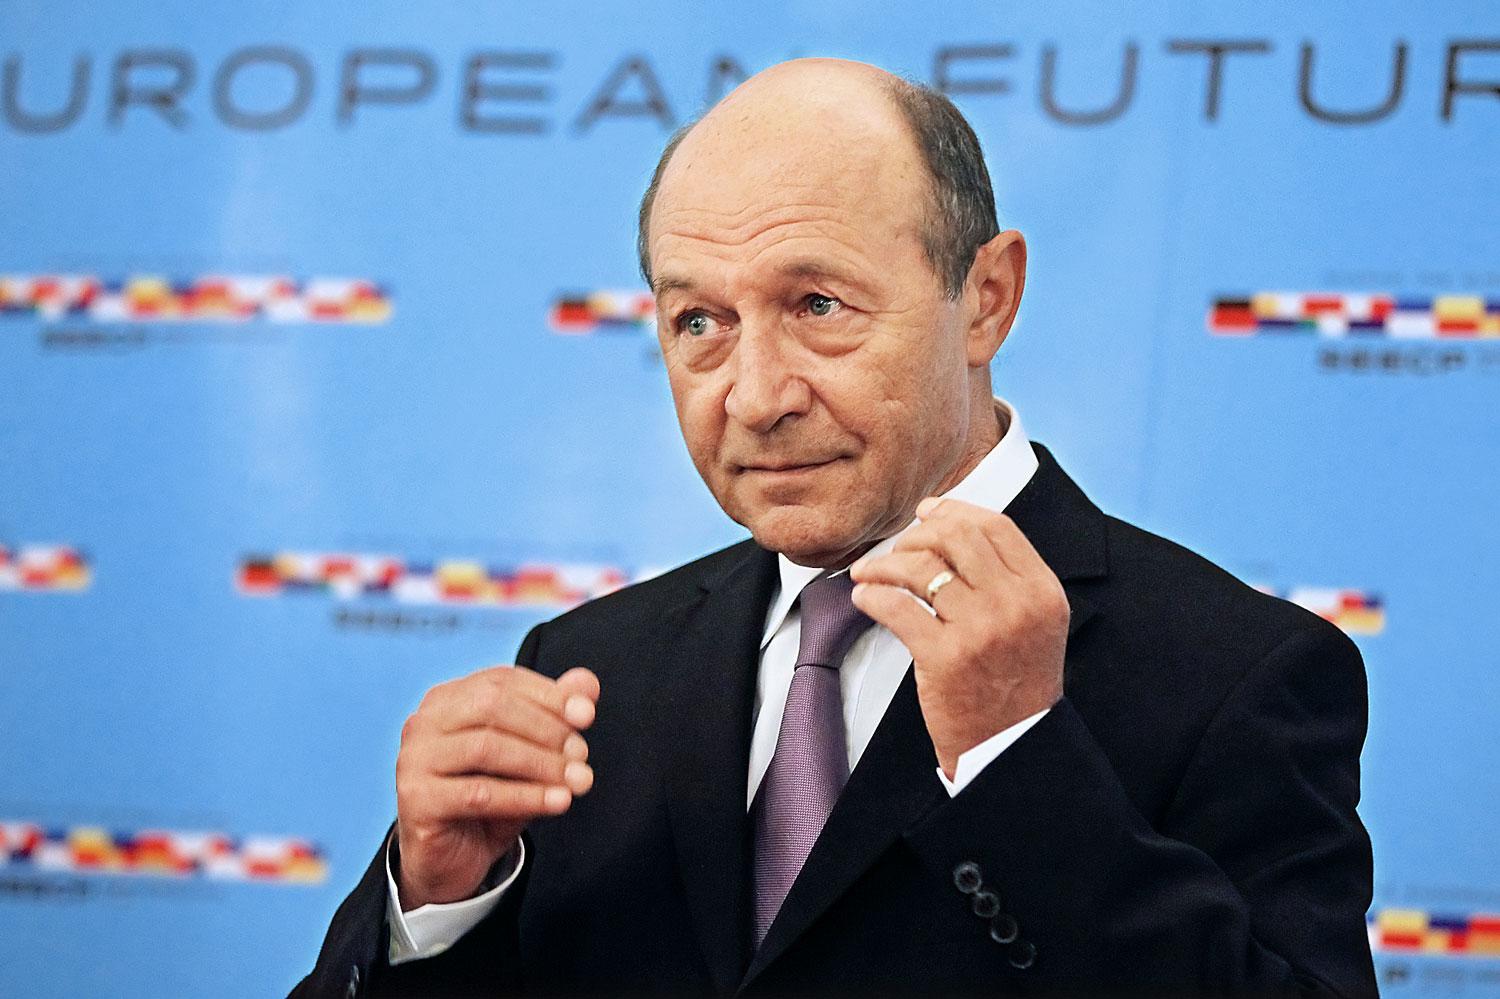 Traian Basescu. Nagyot fordult, és a népszerűsége is nőtt